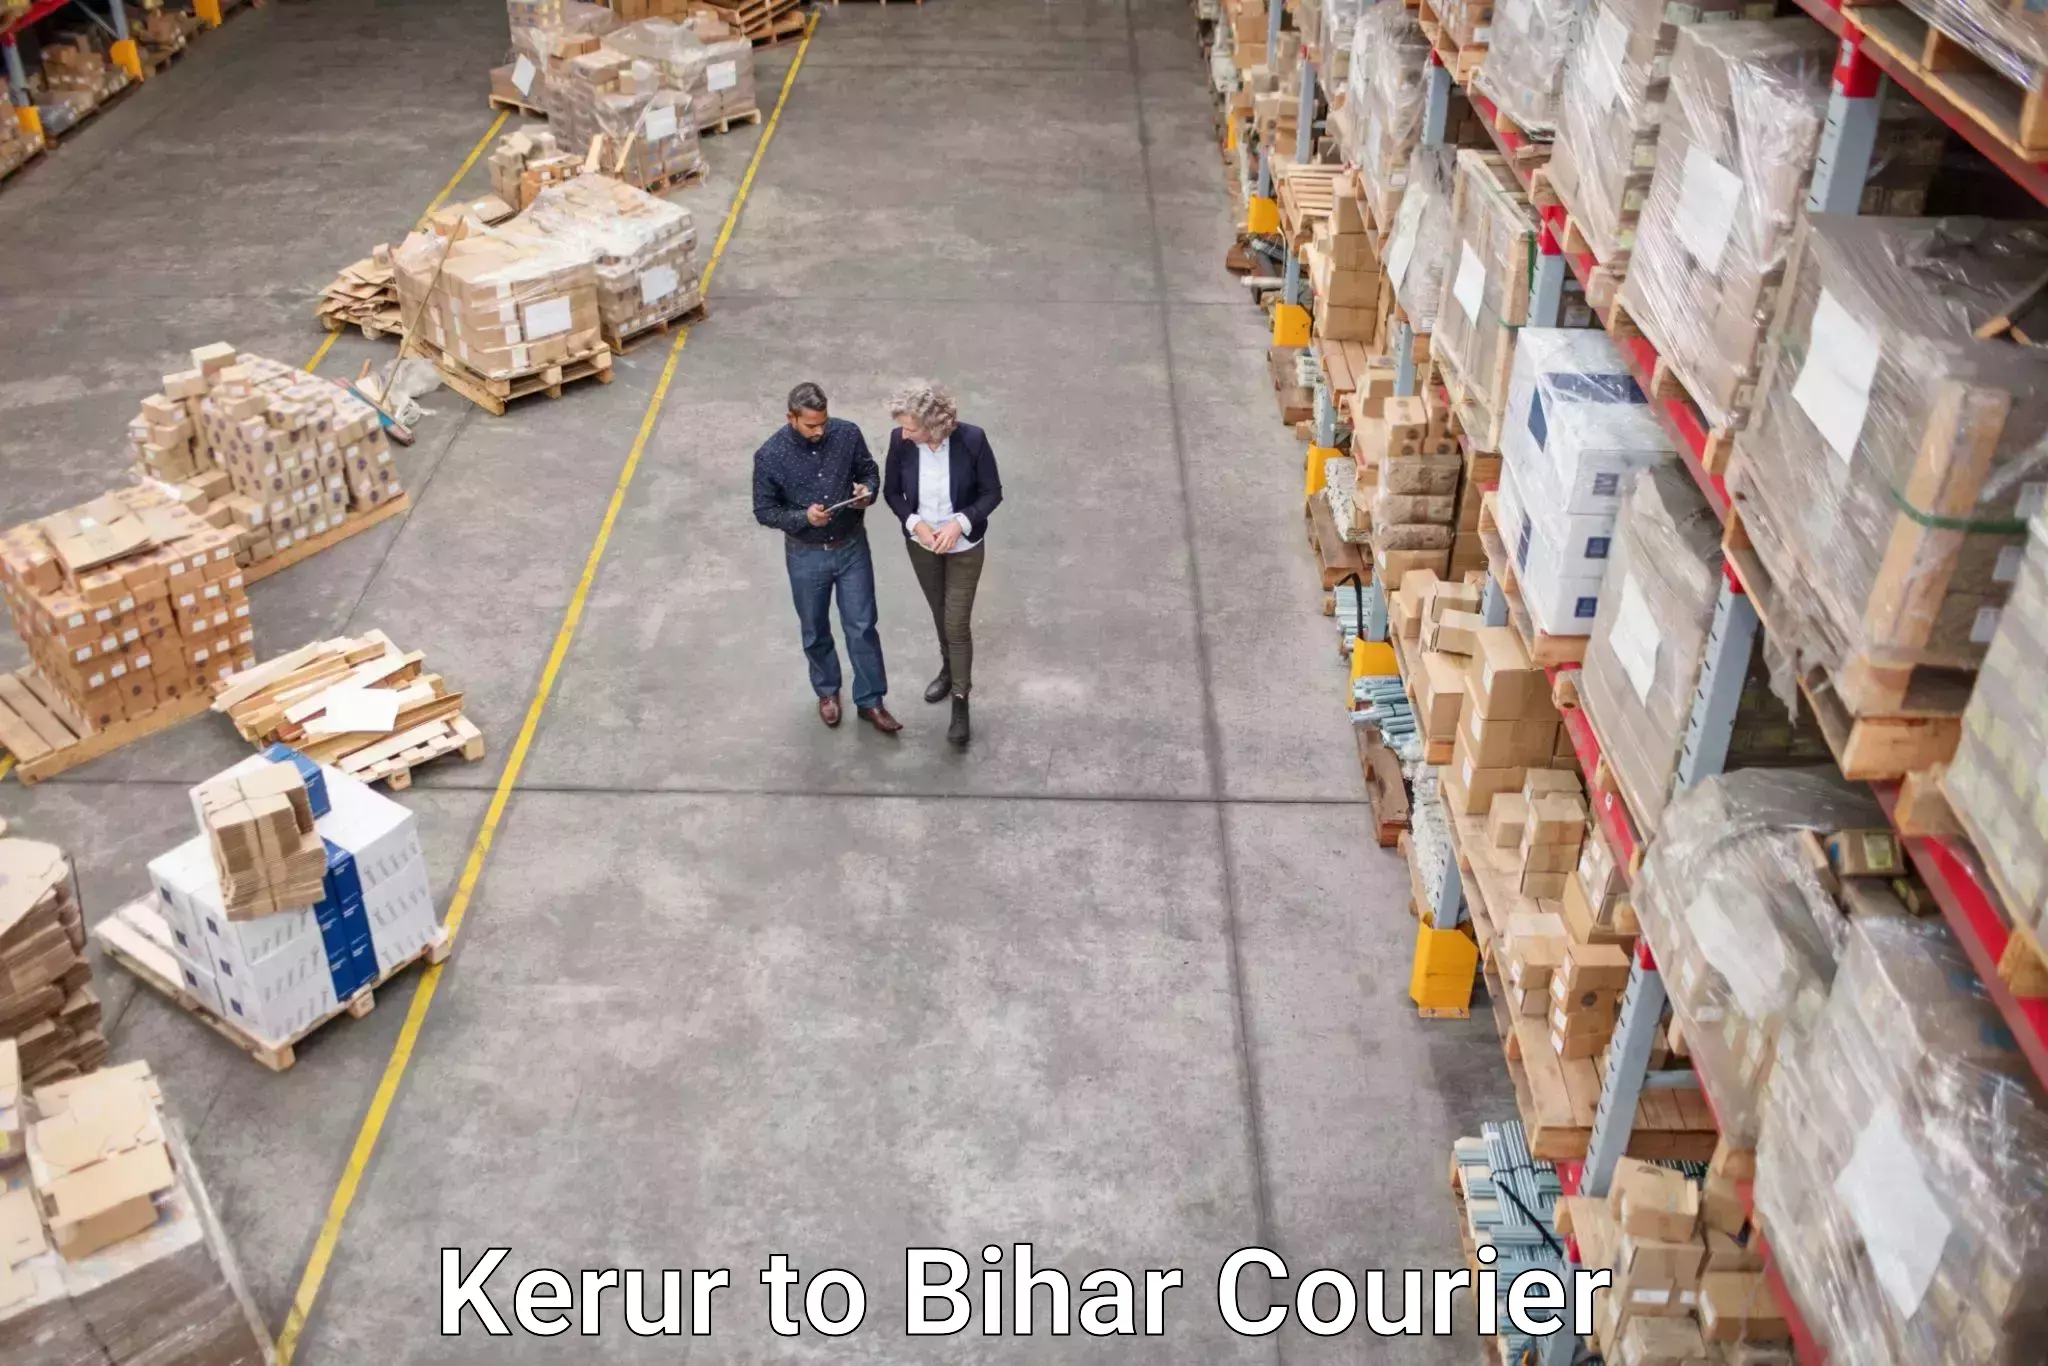 Flexible parcel services Kerur to Udakishanganj